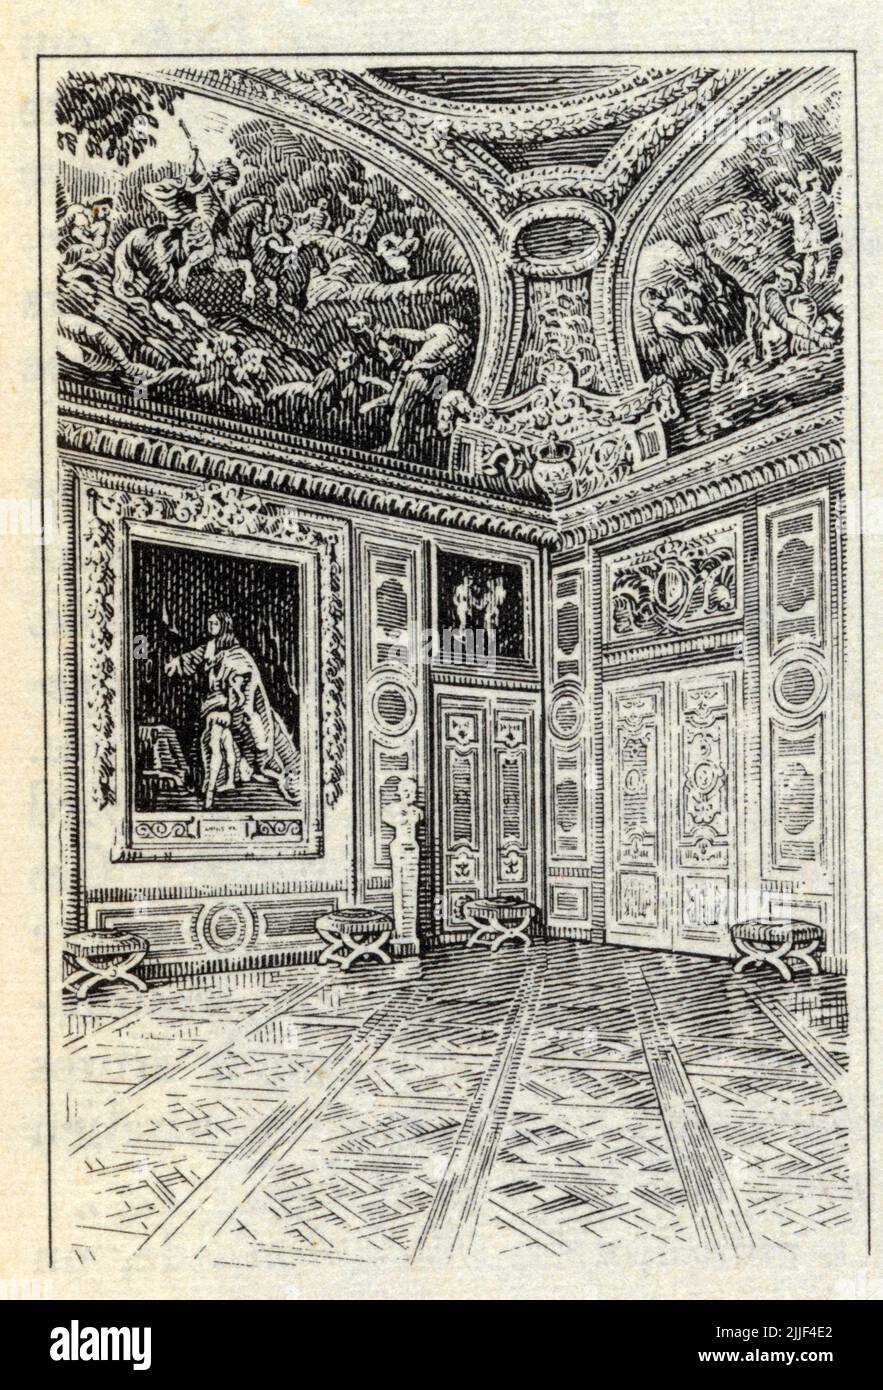 Versailles.style Louis XIV.la décoration est somptueuse par les matériaux employés mais sobre dans les lignes où les Angles droits jouent un rôle prép Foto Stock